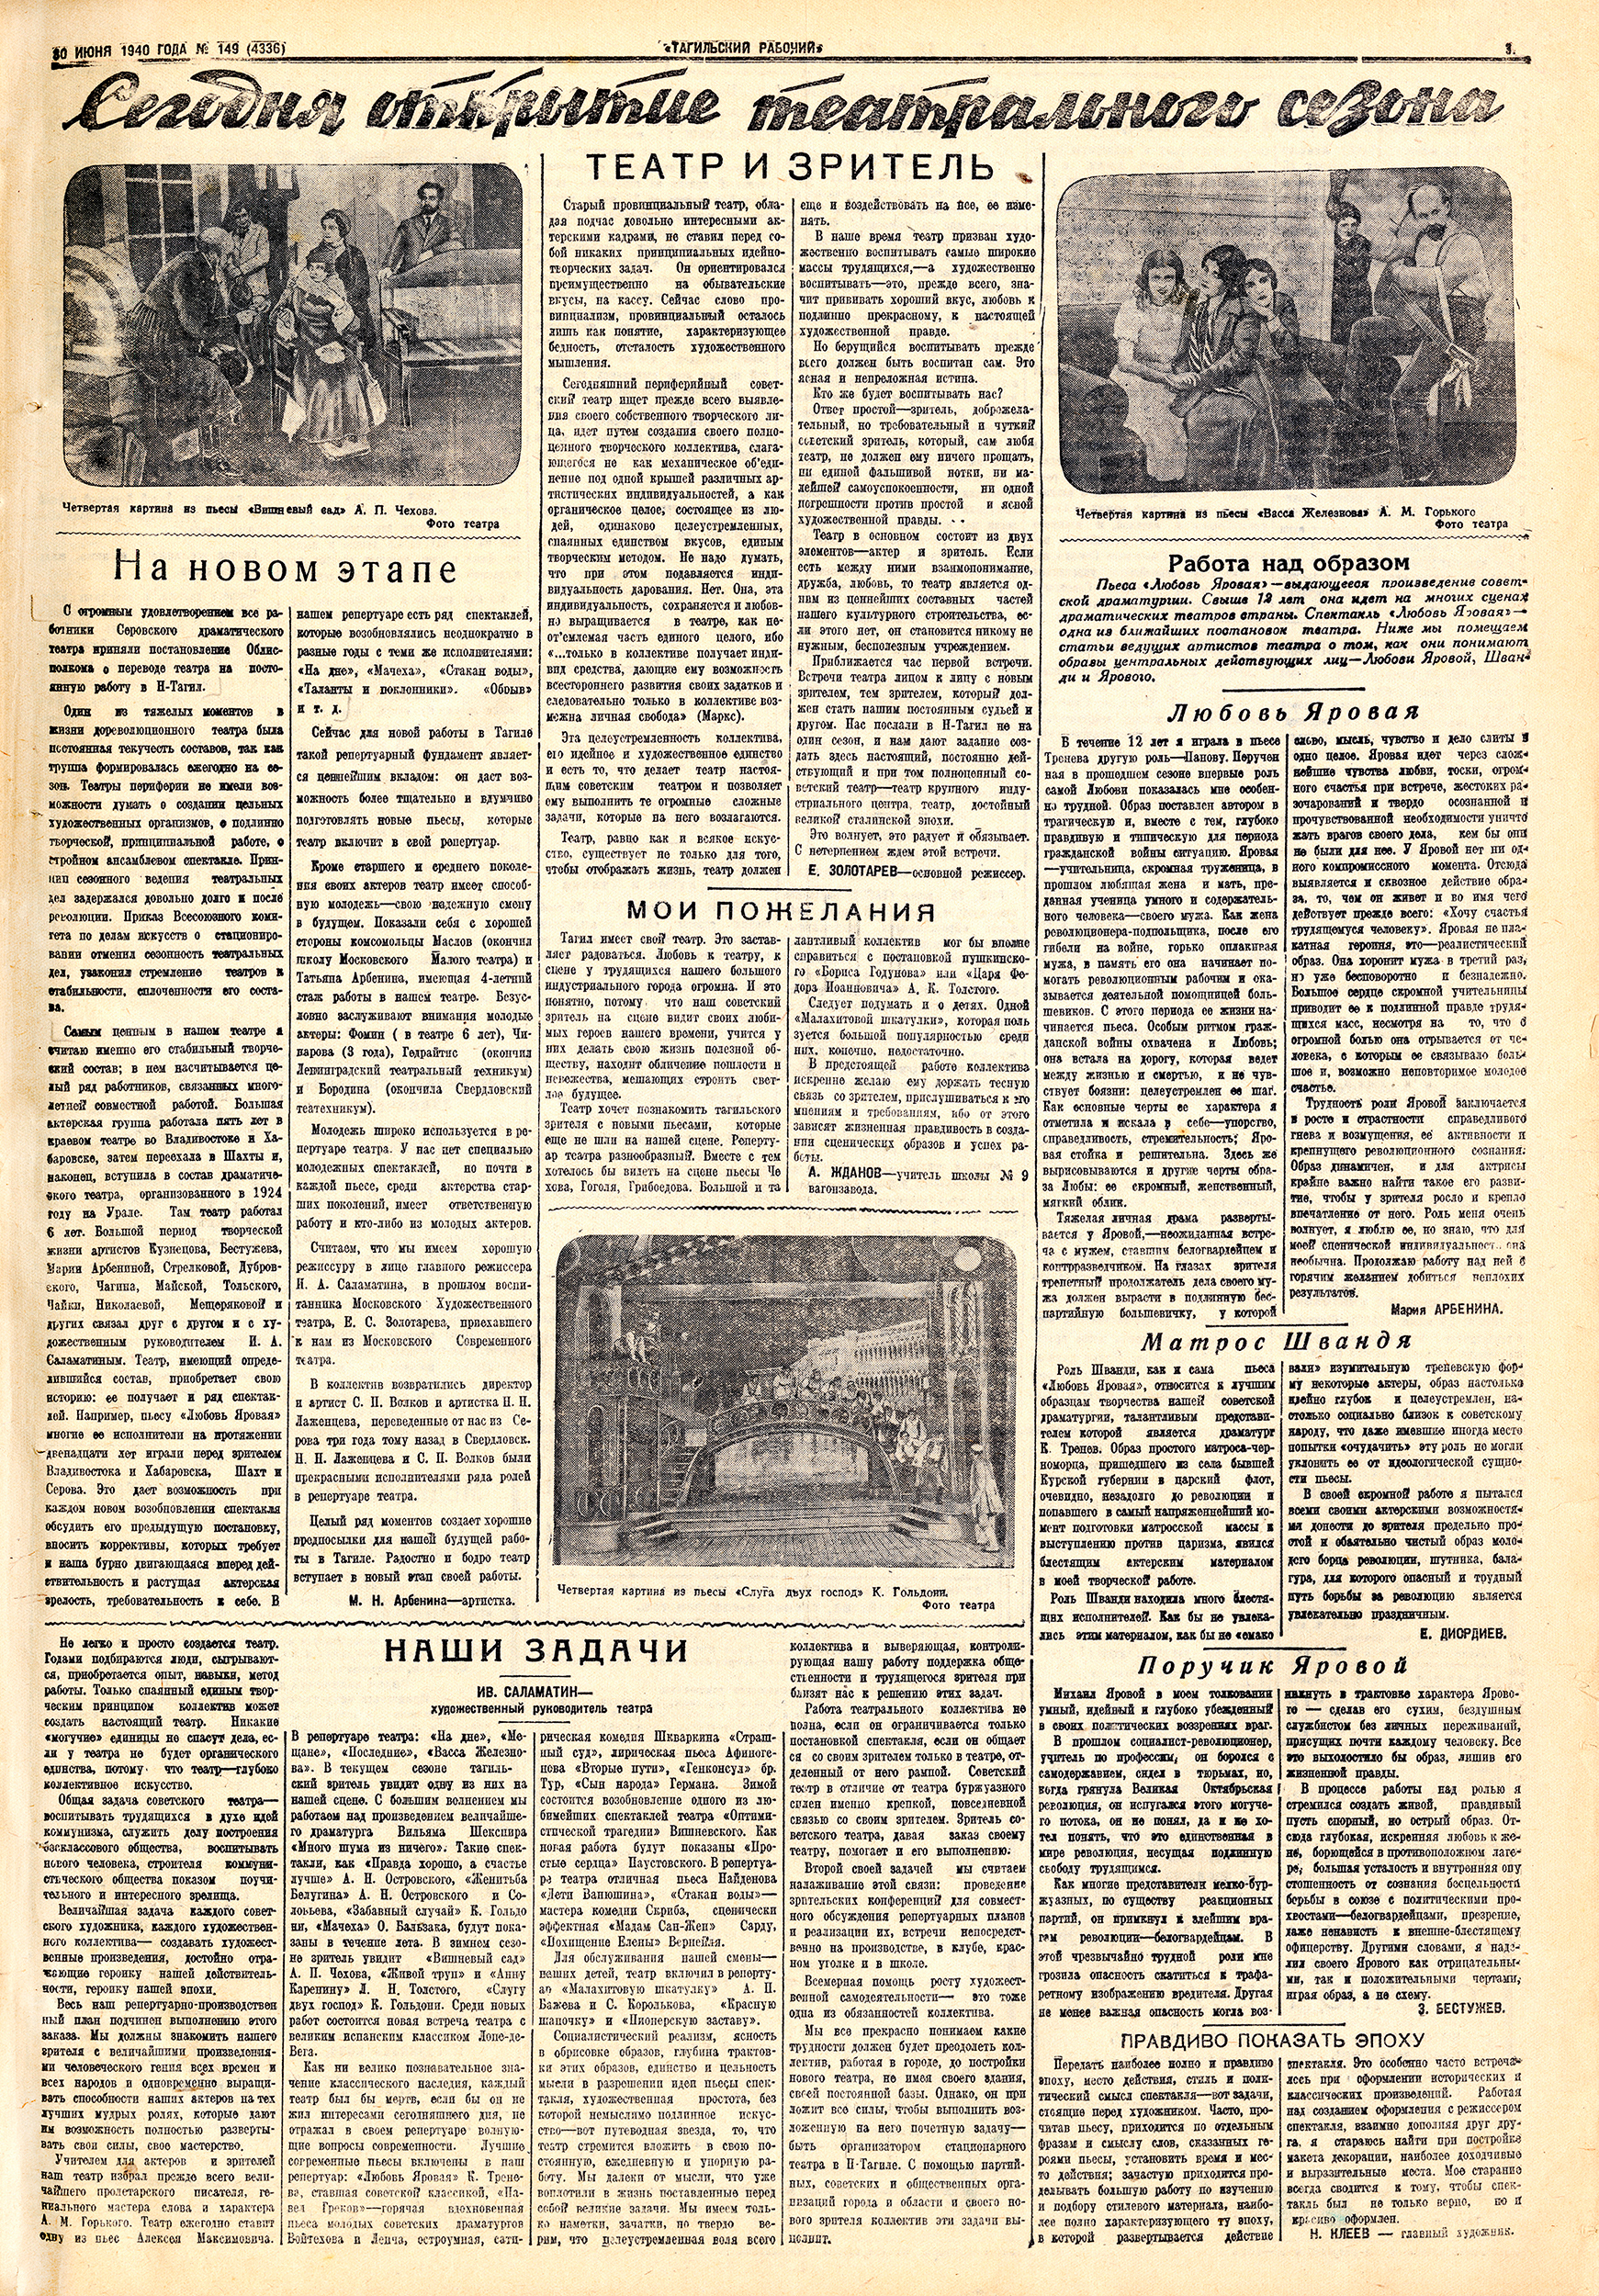 Газета «Тагильский рабочий» от 30 июня 1940 года № 149. С.3